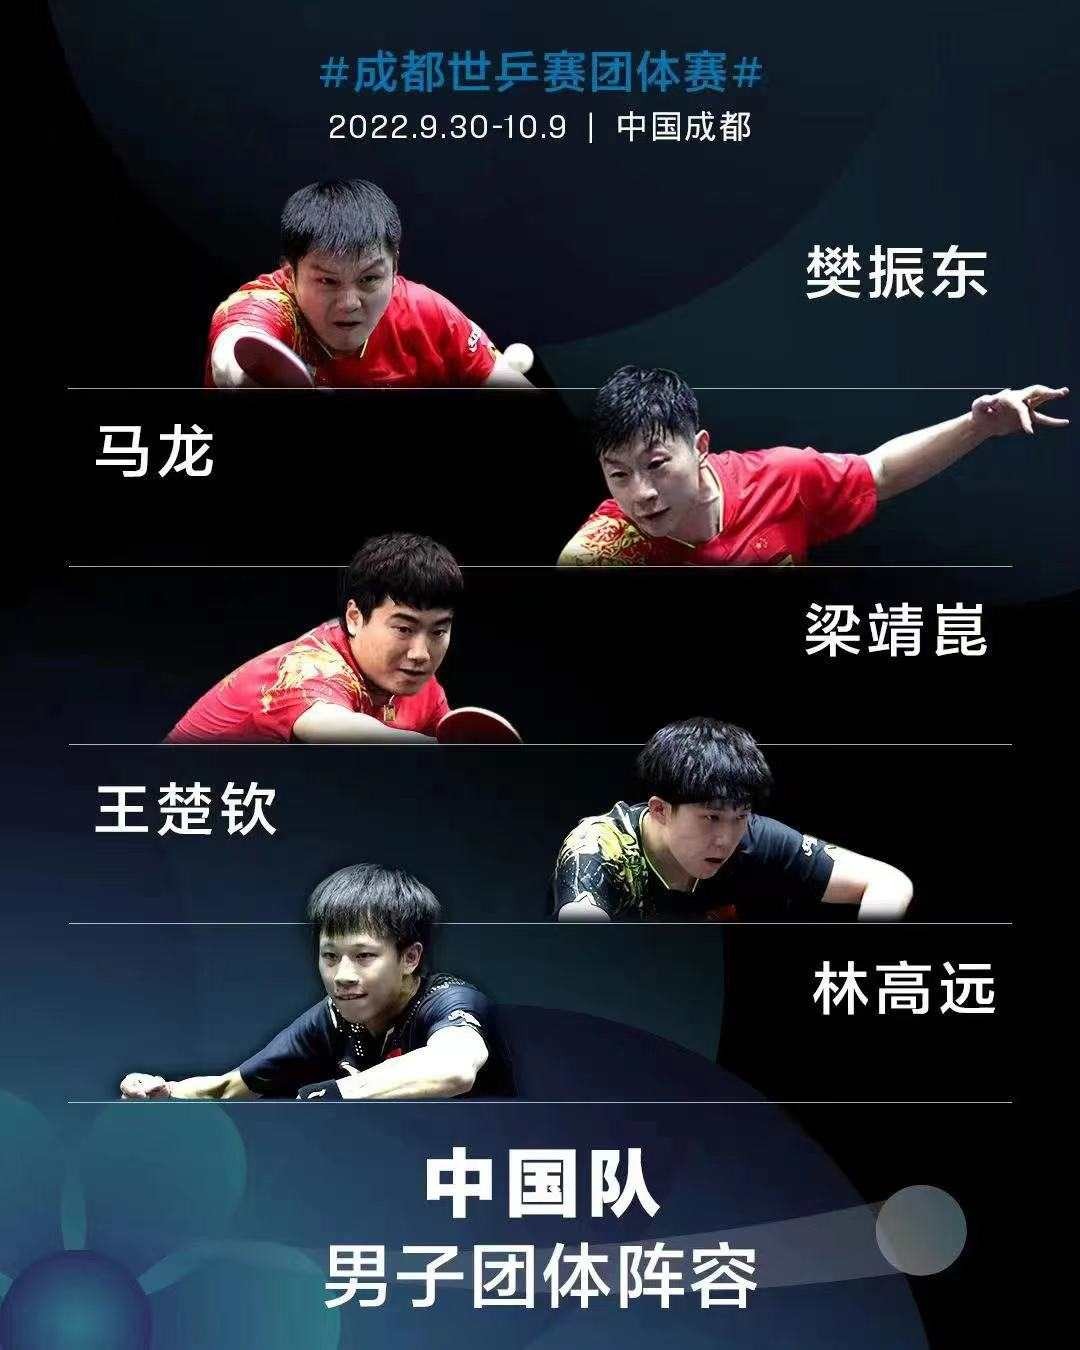 国乒公布成都世乒赛名单选拔办法，9月11日将公布参赛名单 - 哔哩哔哩